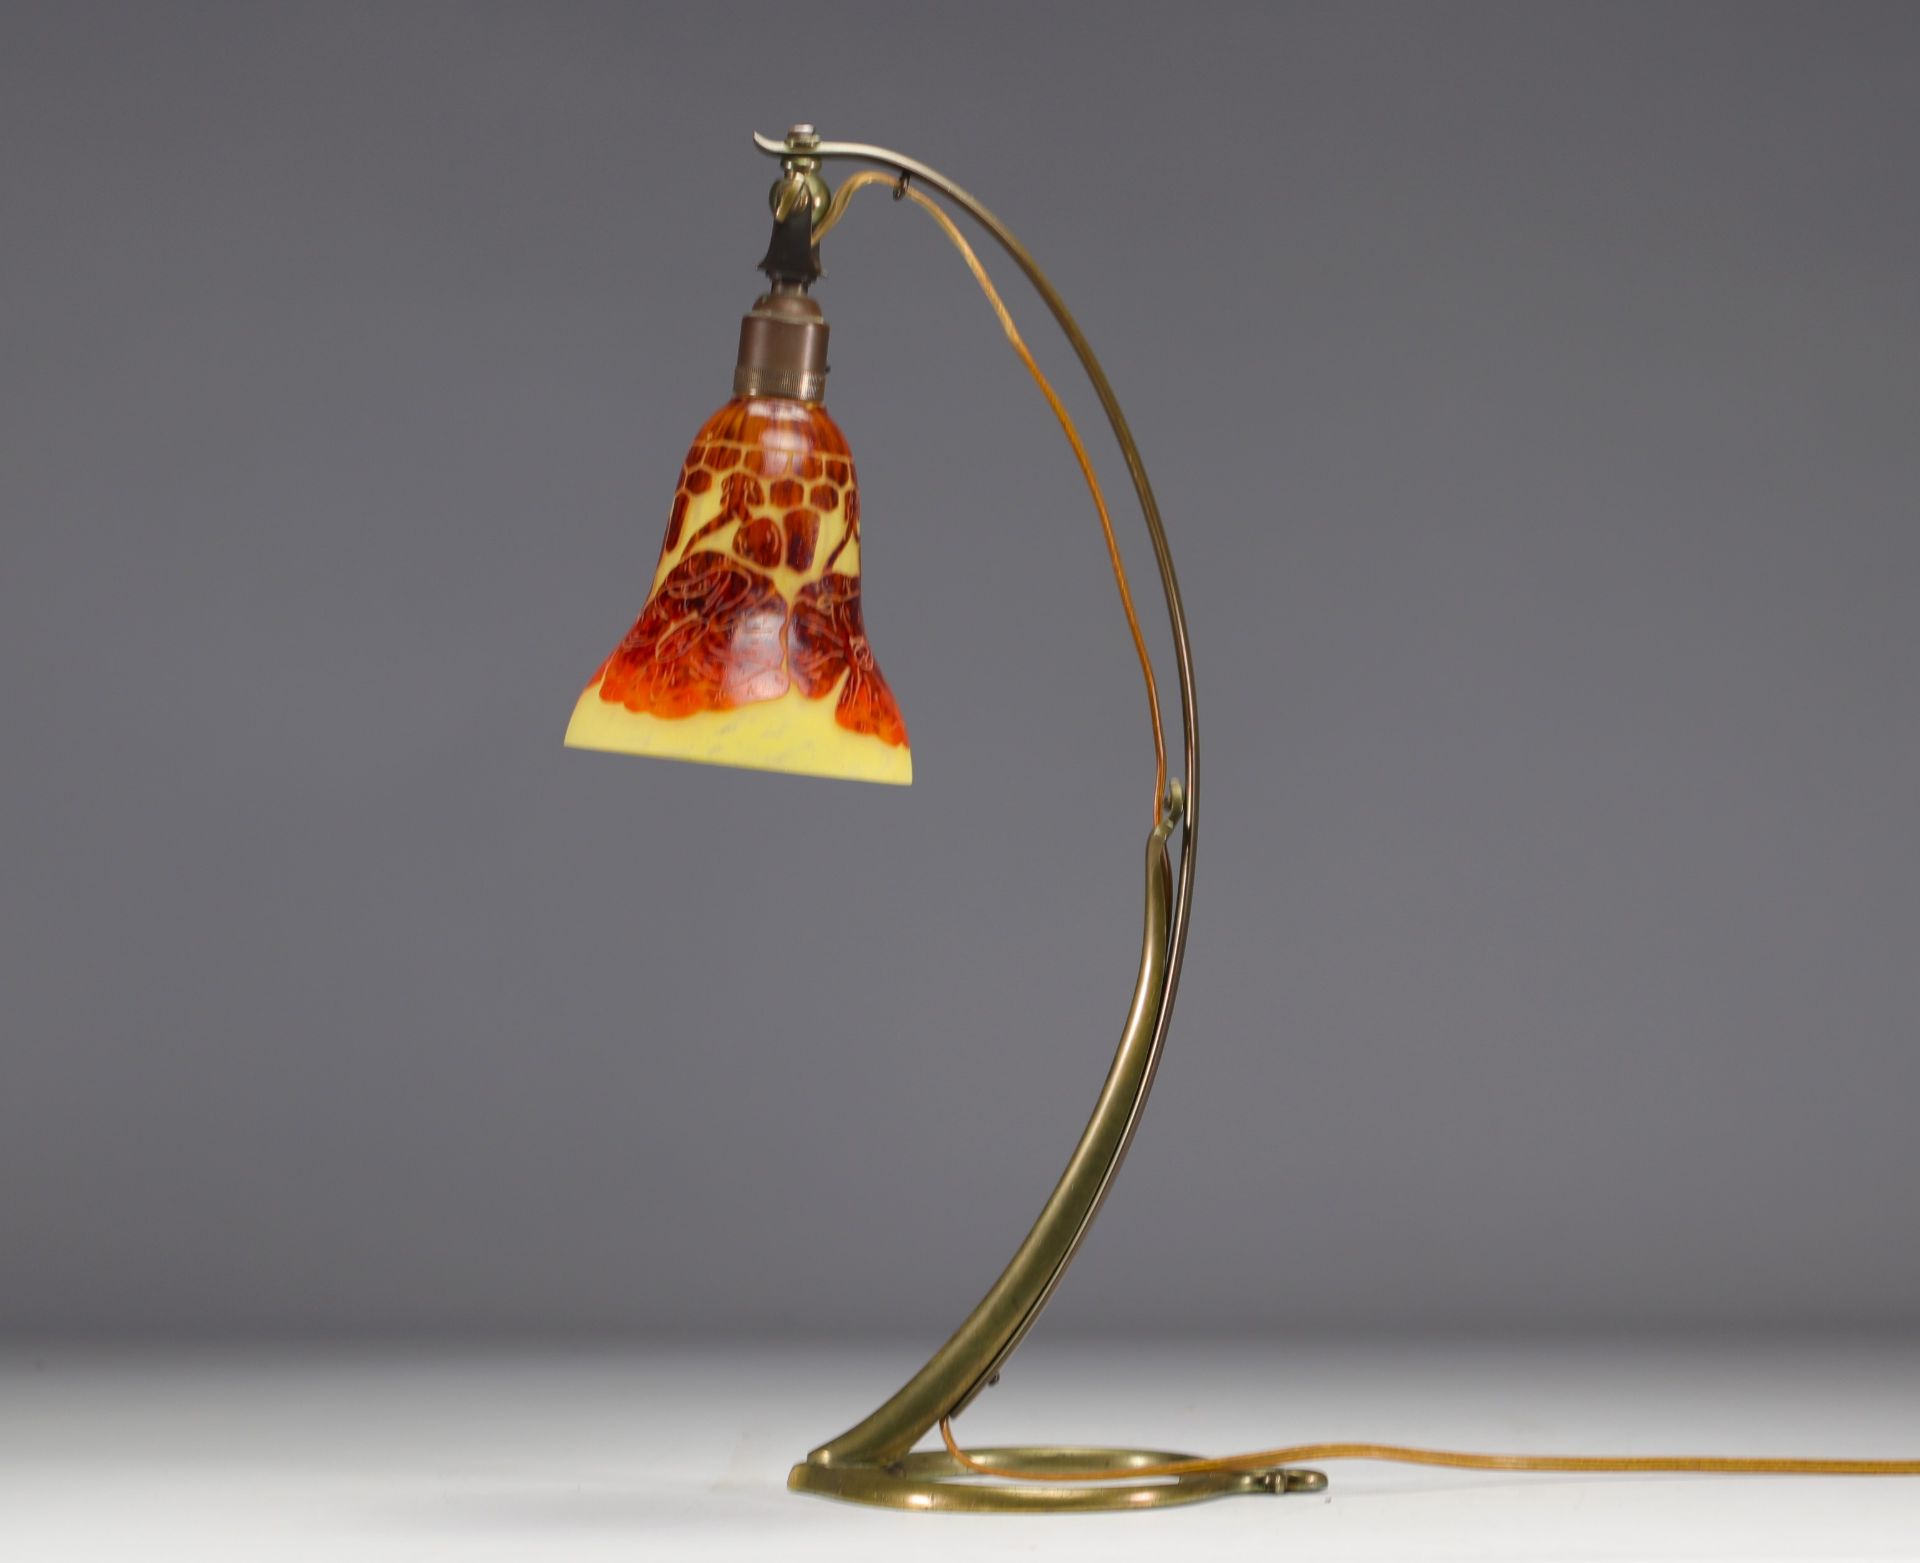 Art Nouveau bronze lamp with acid-etched tulip "Le Verre Francais" - Image 2 of 4